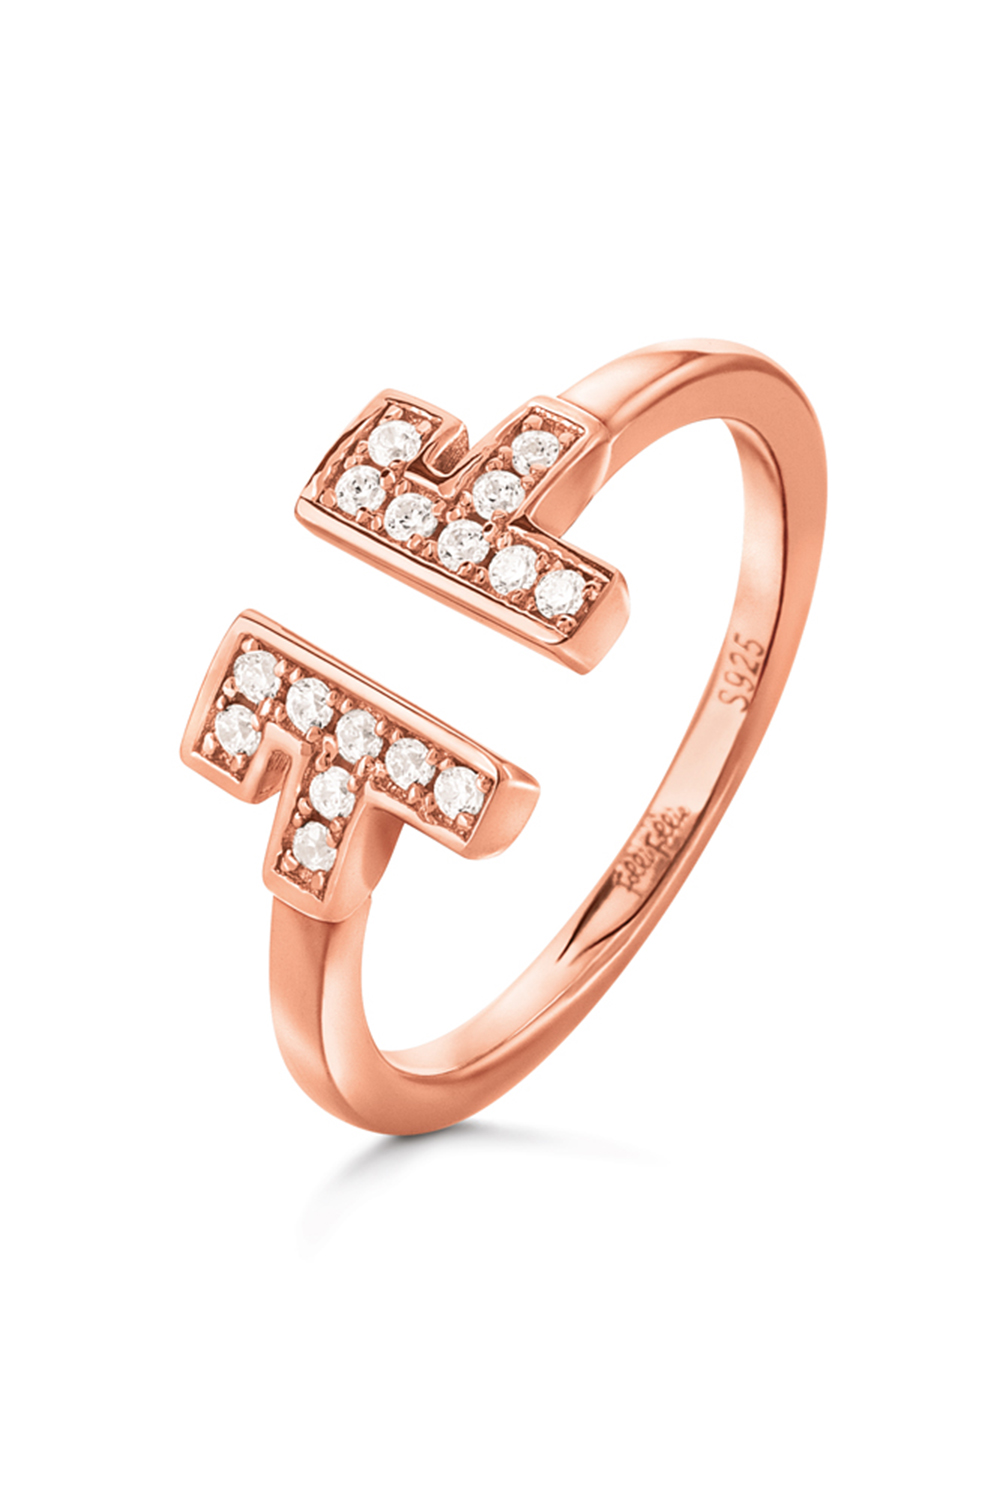 Γυναικεία/Αξεσουάρ/Κοσμήματα/Δαχτυλίδια FOLLI FOLLIE - Γυναικείο ασημένιο δαχτυλίδι FOLLI FOLLIE MY FF ροζ χρυσό